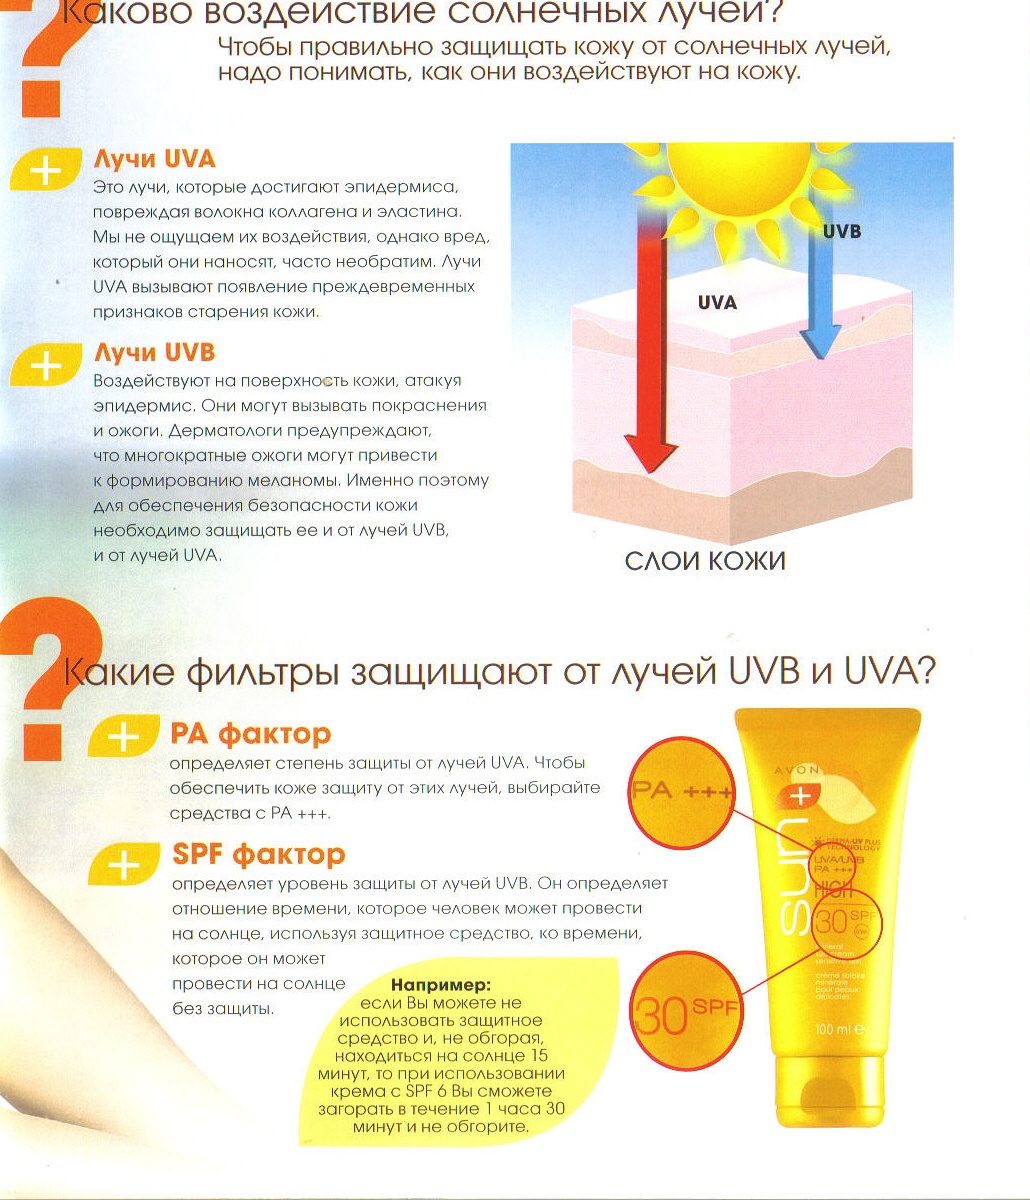 Как пользоваться спф кремом. Влияние солнечных лучей на кожу. Солнечное излучение и влияние на кожу. Защита от солнечных лучей. Воздействие солнечных лучей на кожу человека.